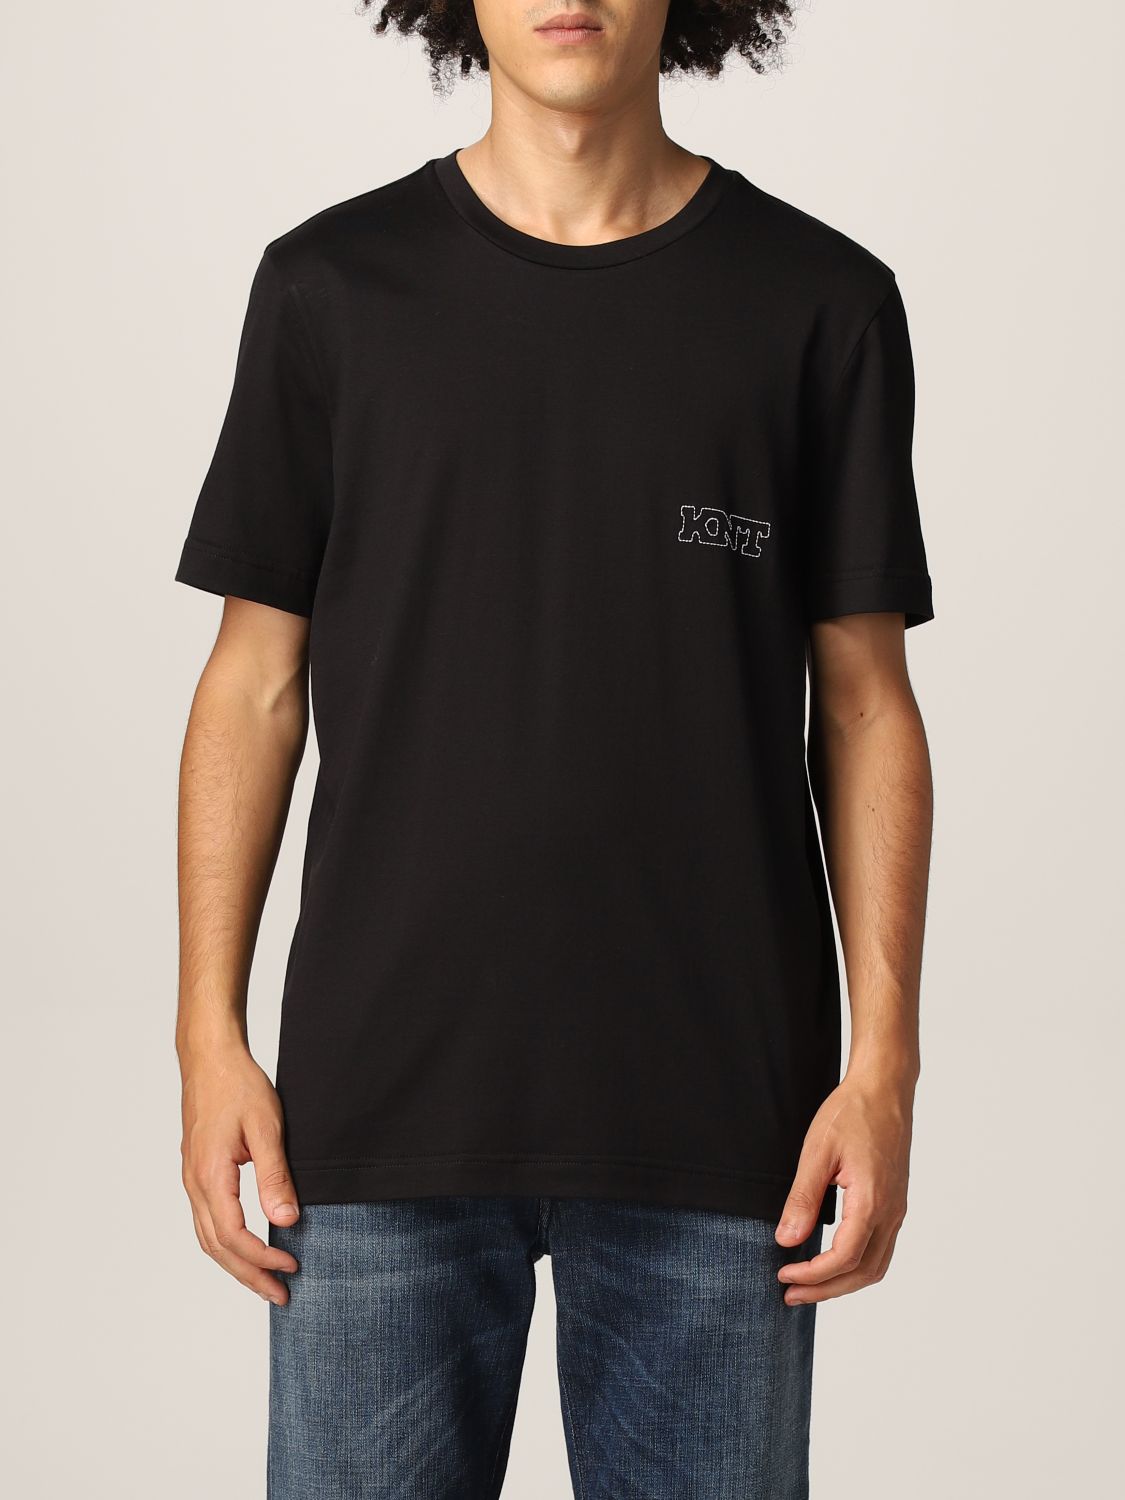 T-Shirt Knt: T-shirt herren Knt schwarz 1